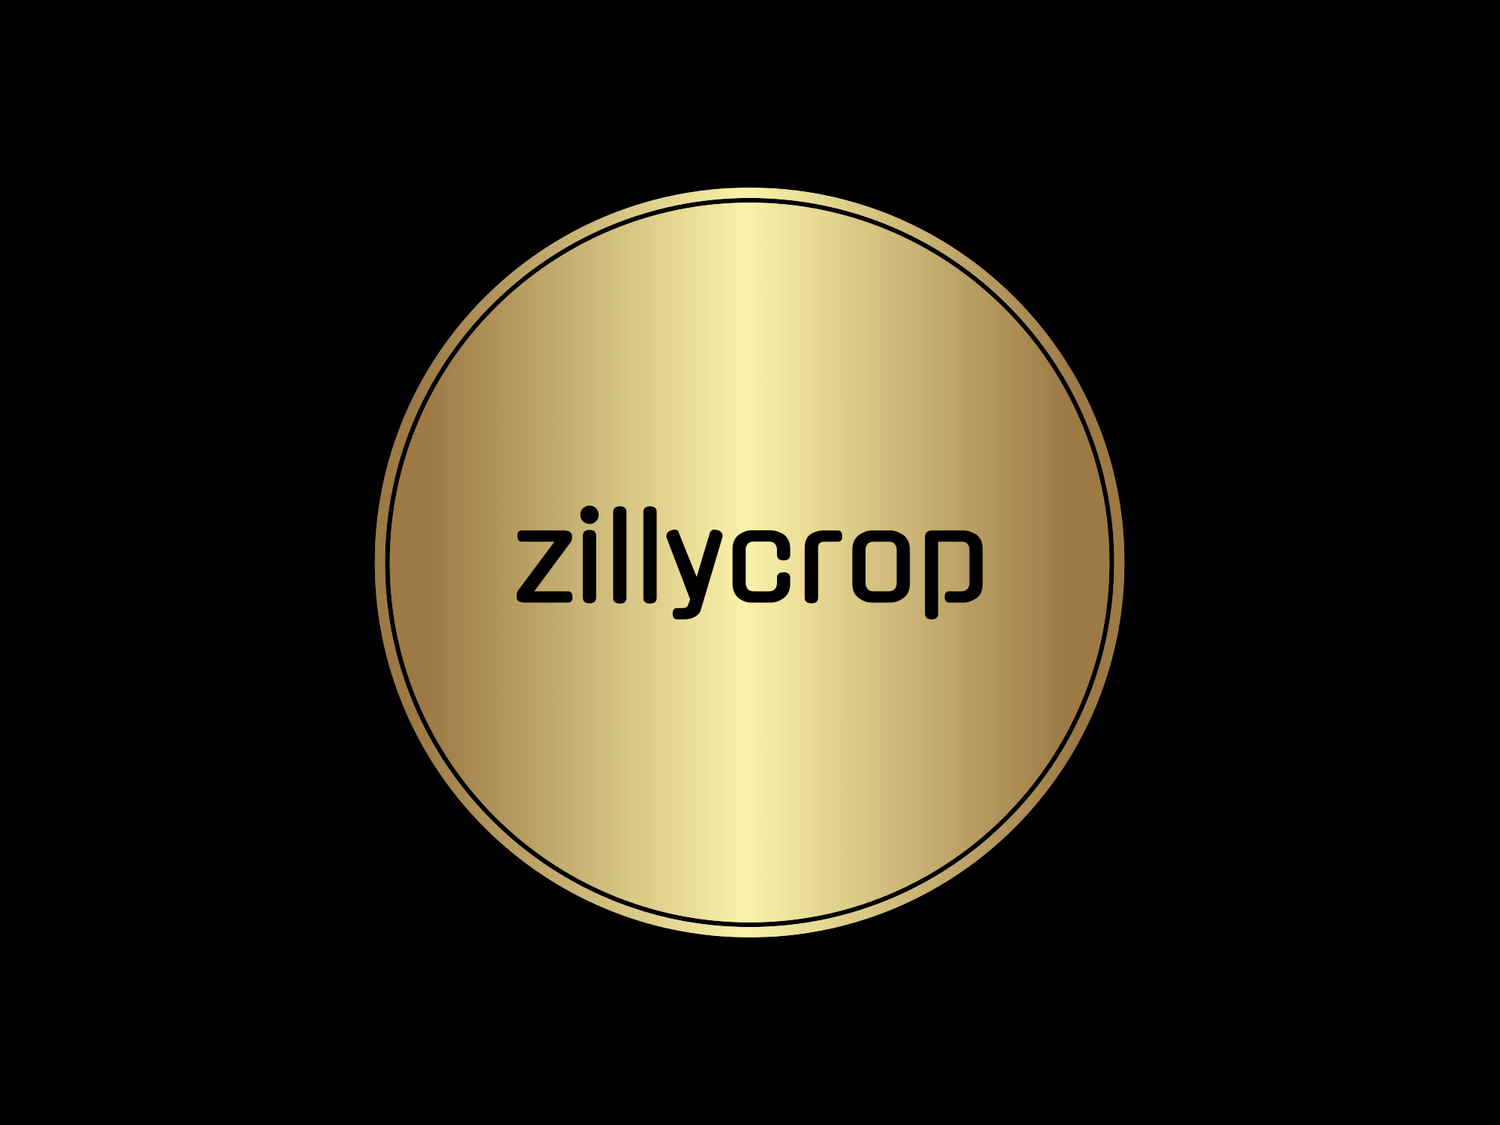 ZILLYCROP